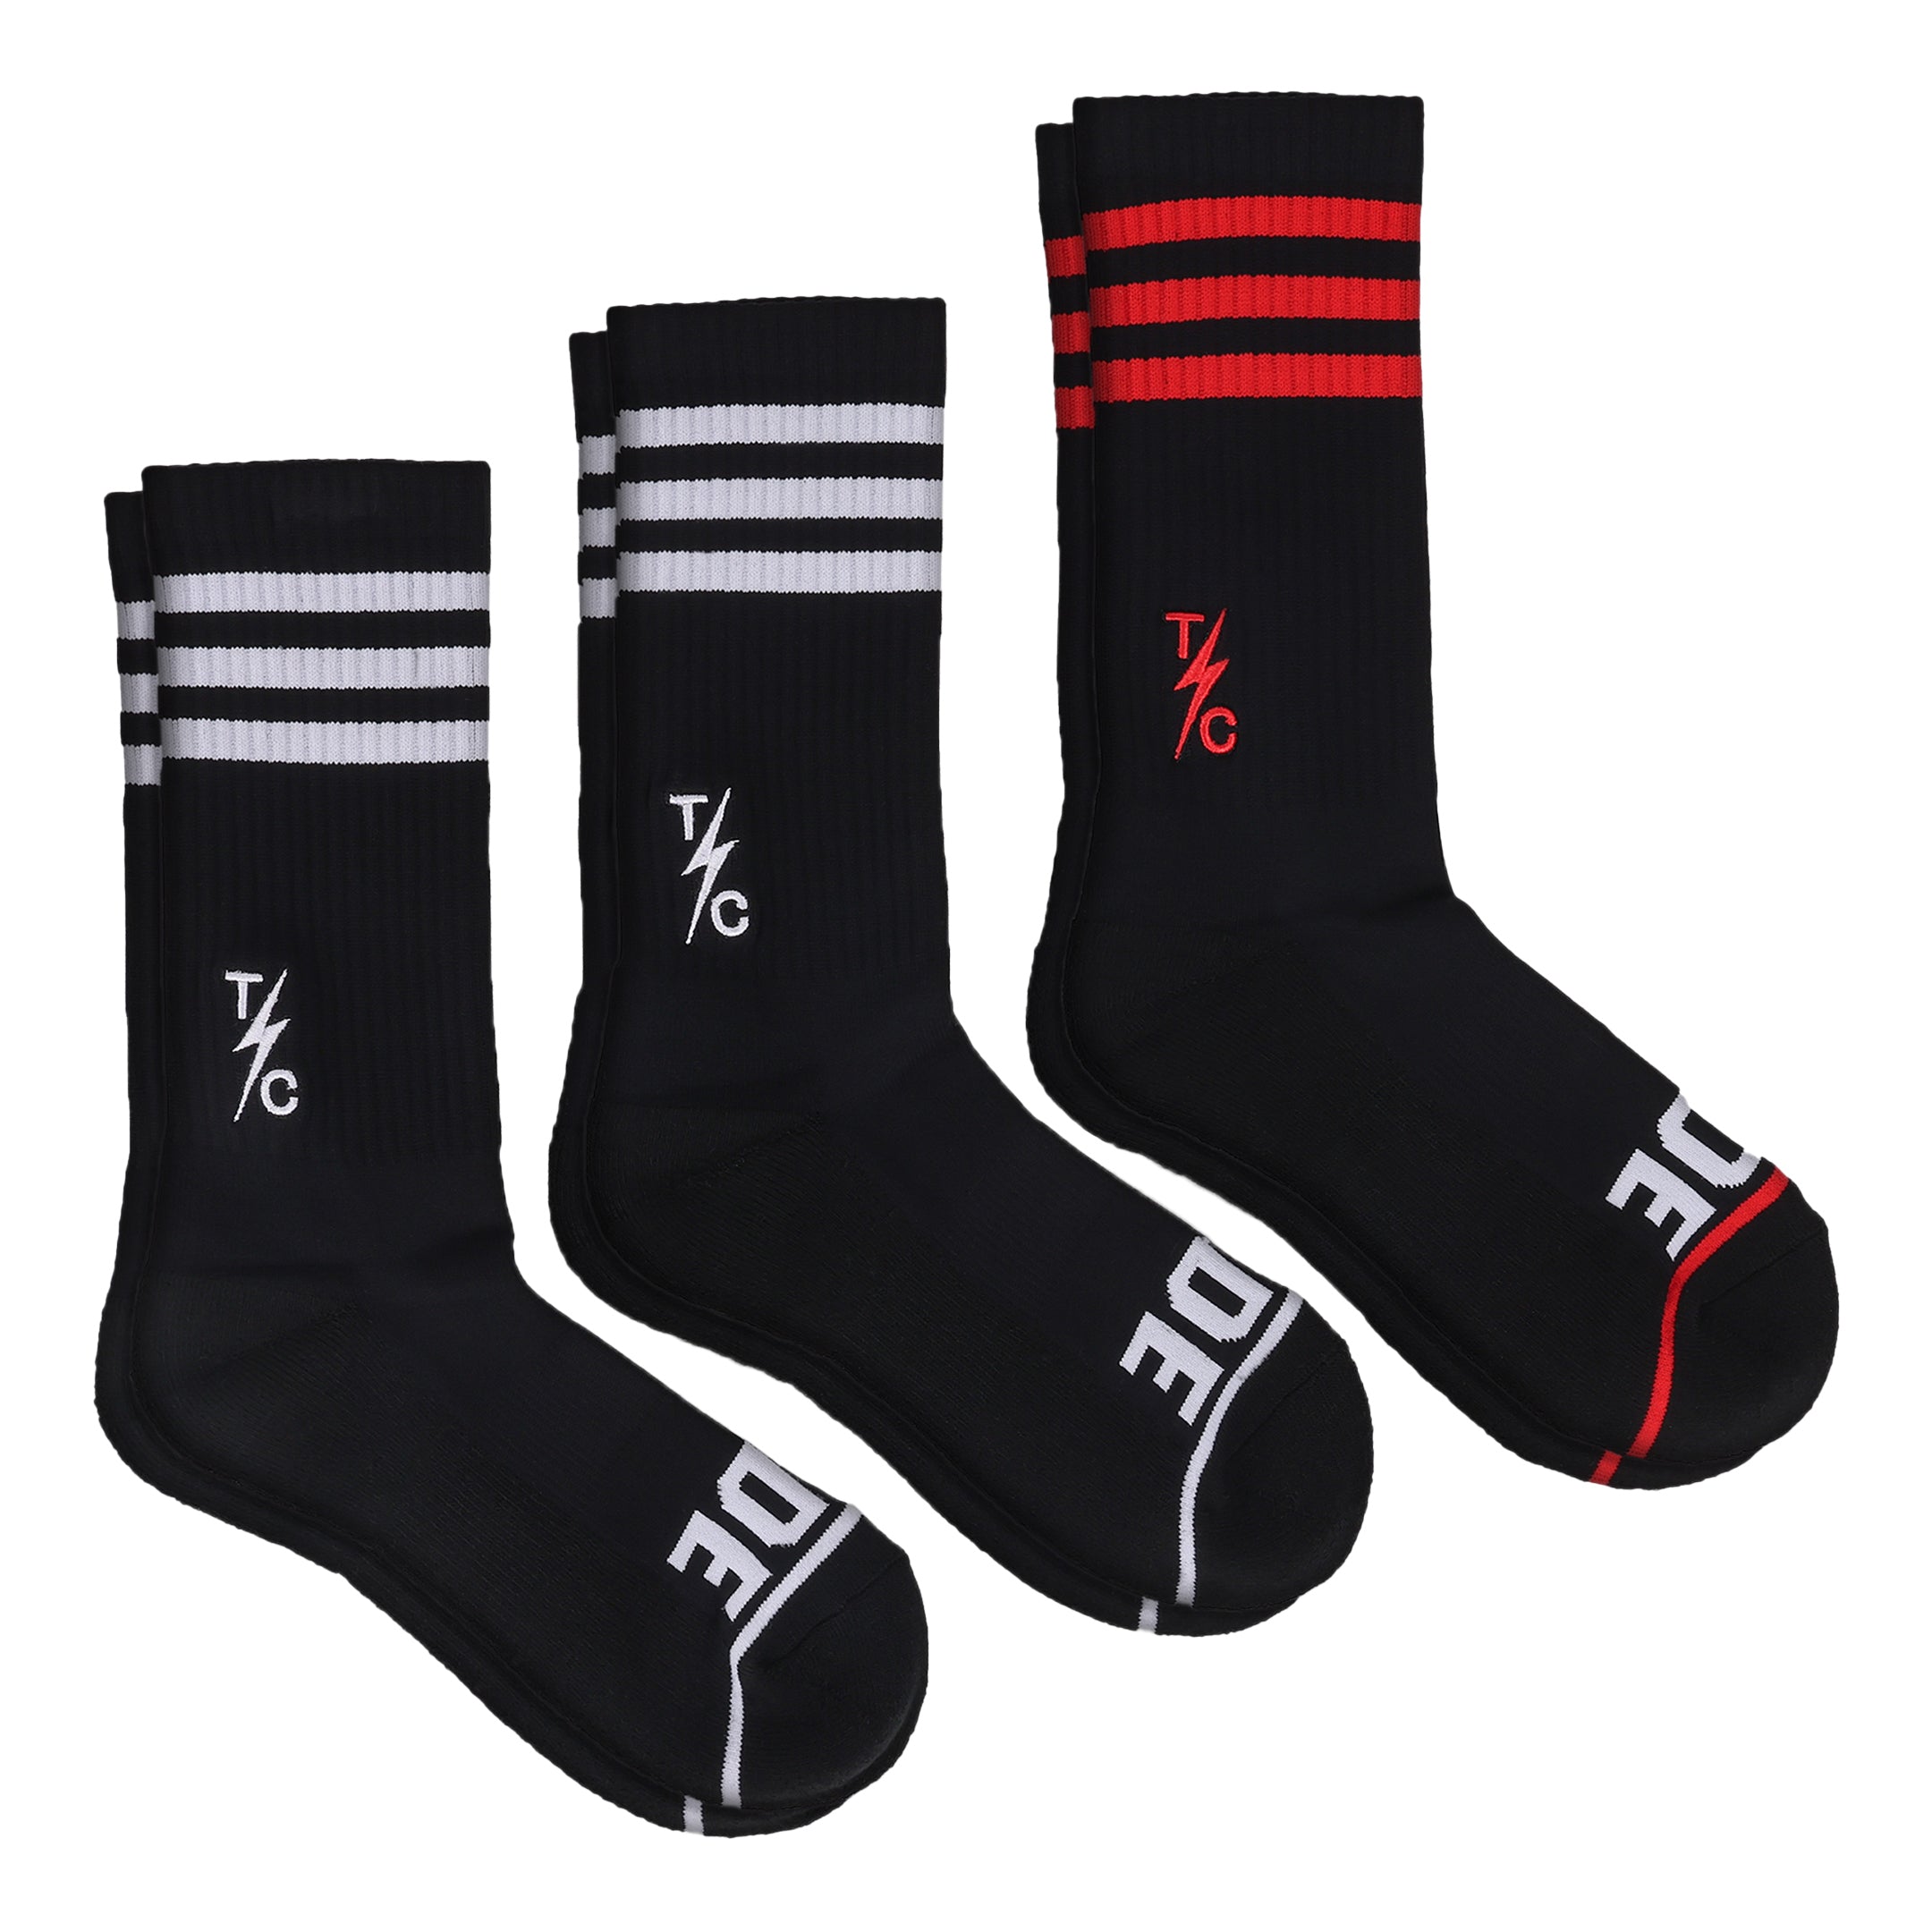 Pack Of 5 Socks - Black